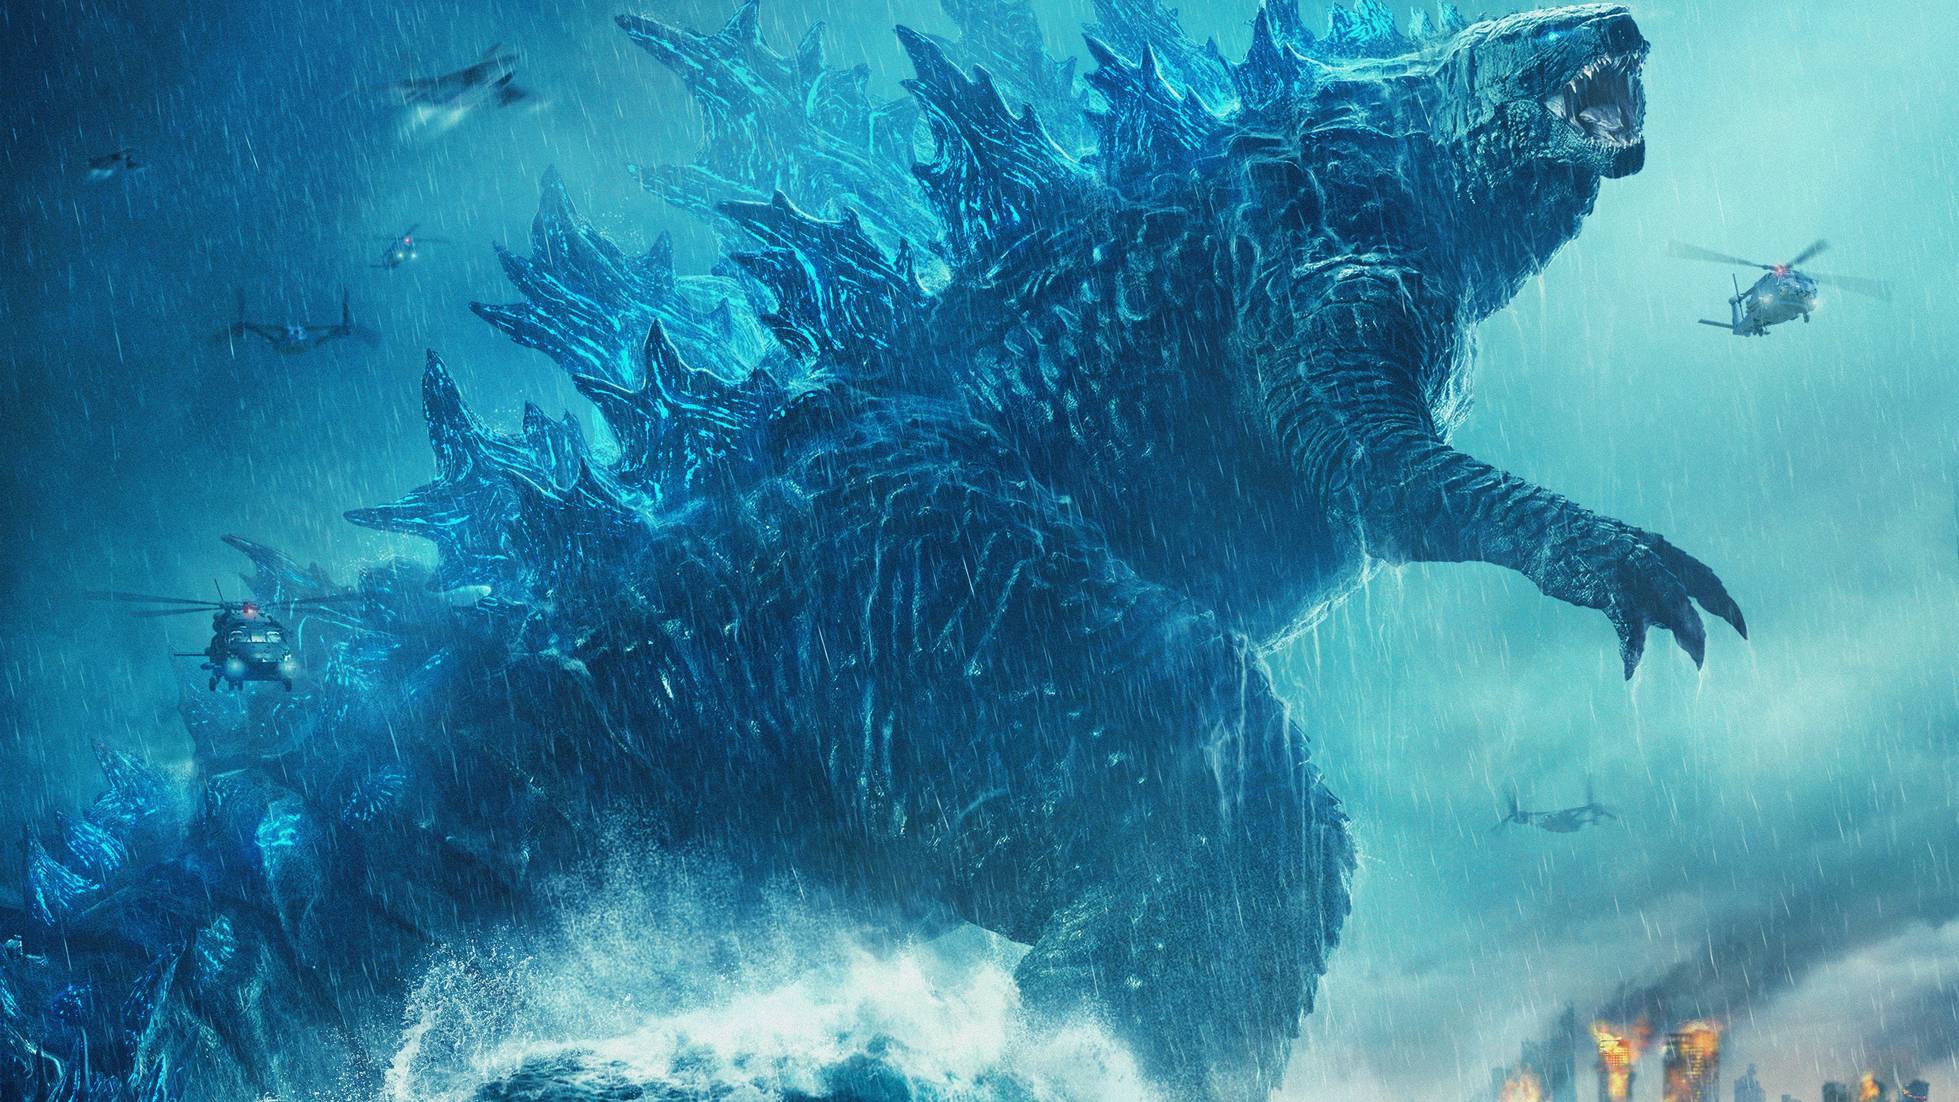 Godzilla vs mechagodzilla epic battle wallpaper | Wallpapers.ai